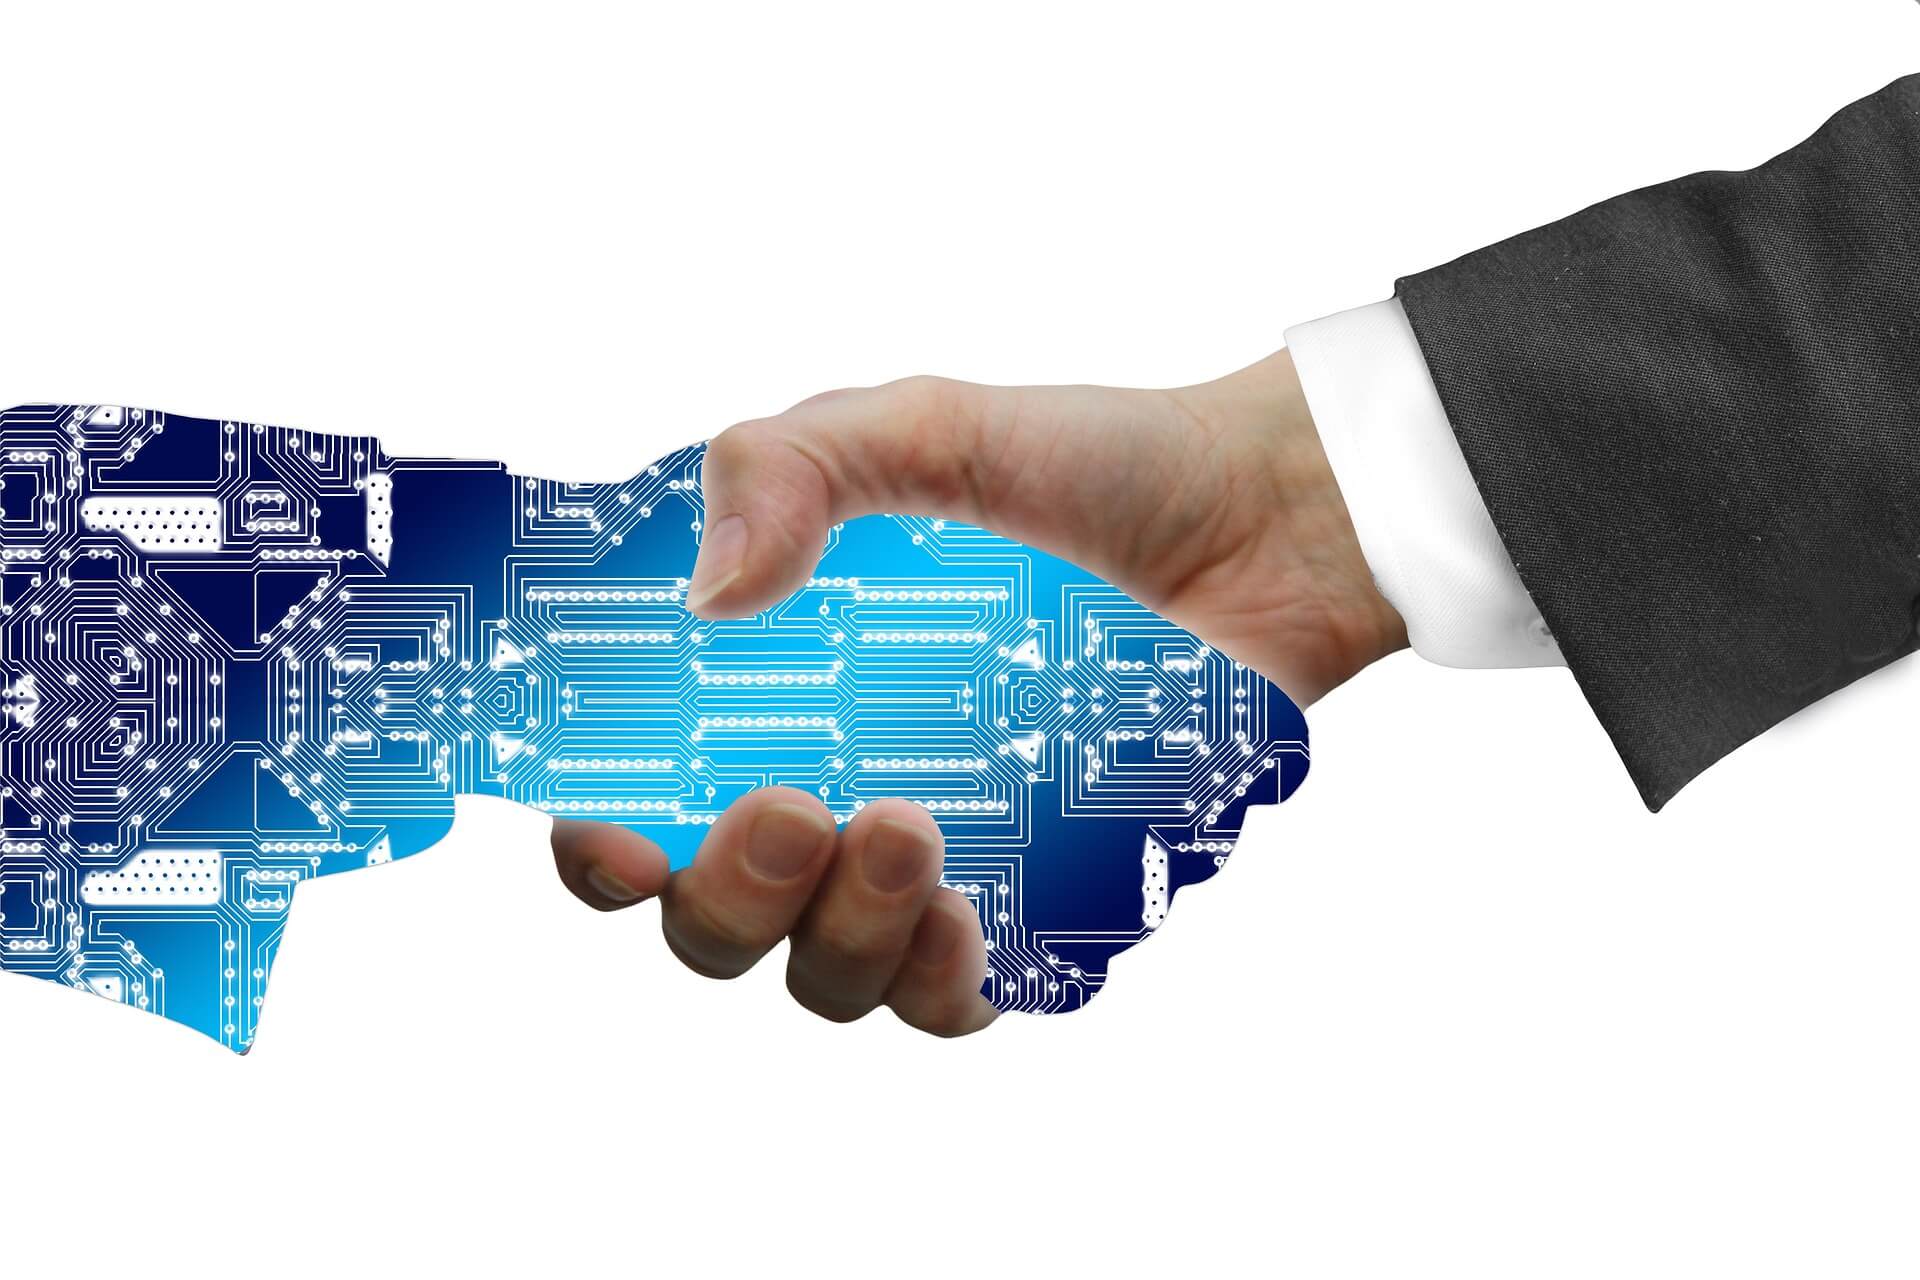 图片展示了一只人类手与一只电子线路板图案的机械手相握，象征着人类与技术的结合。